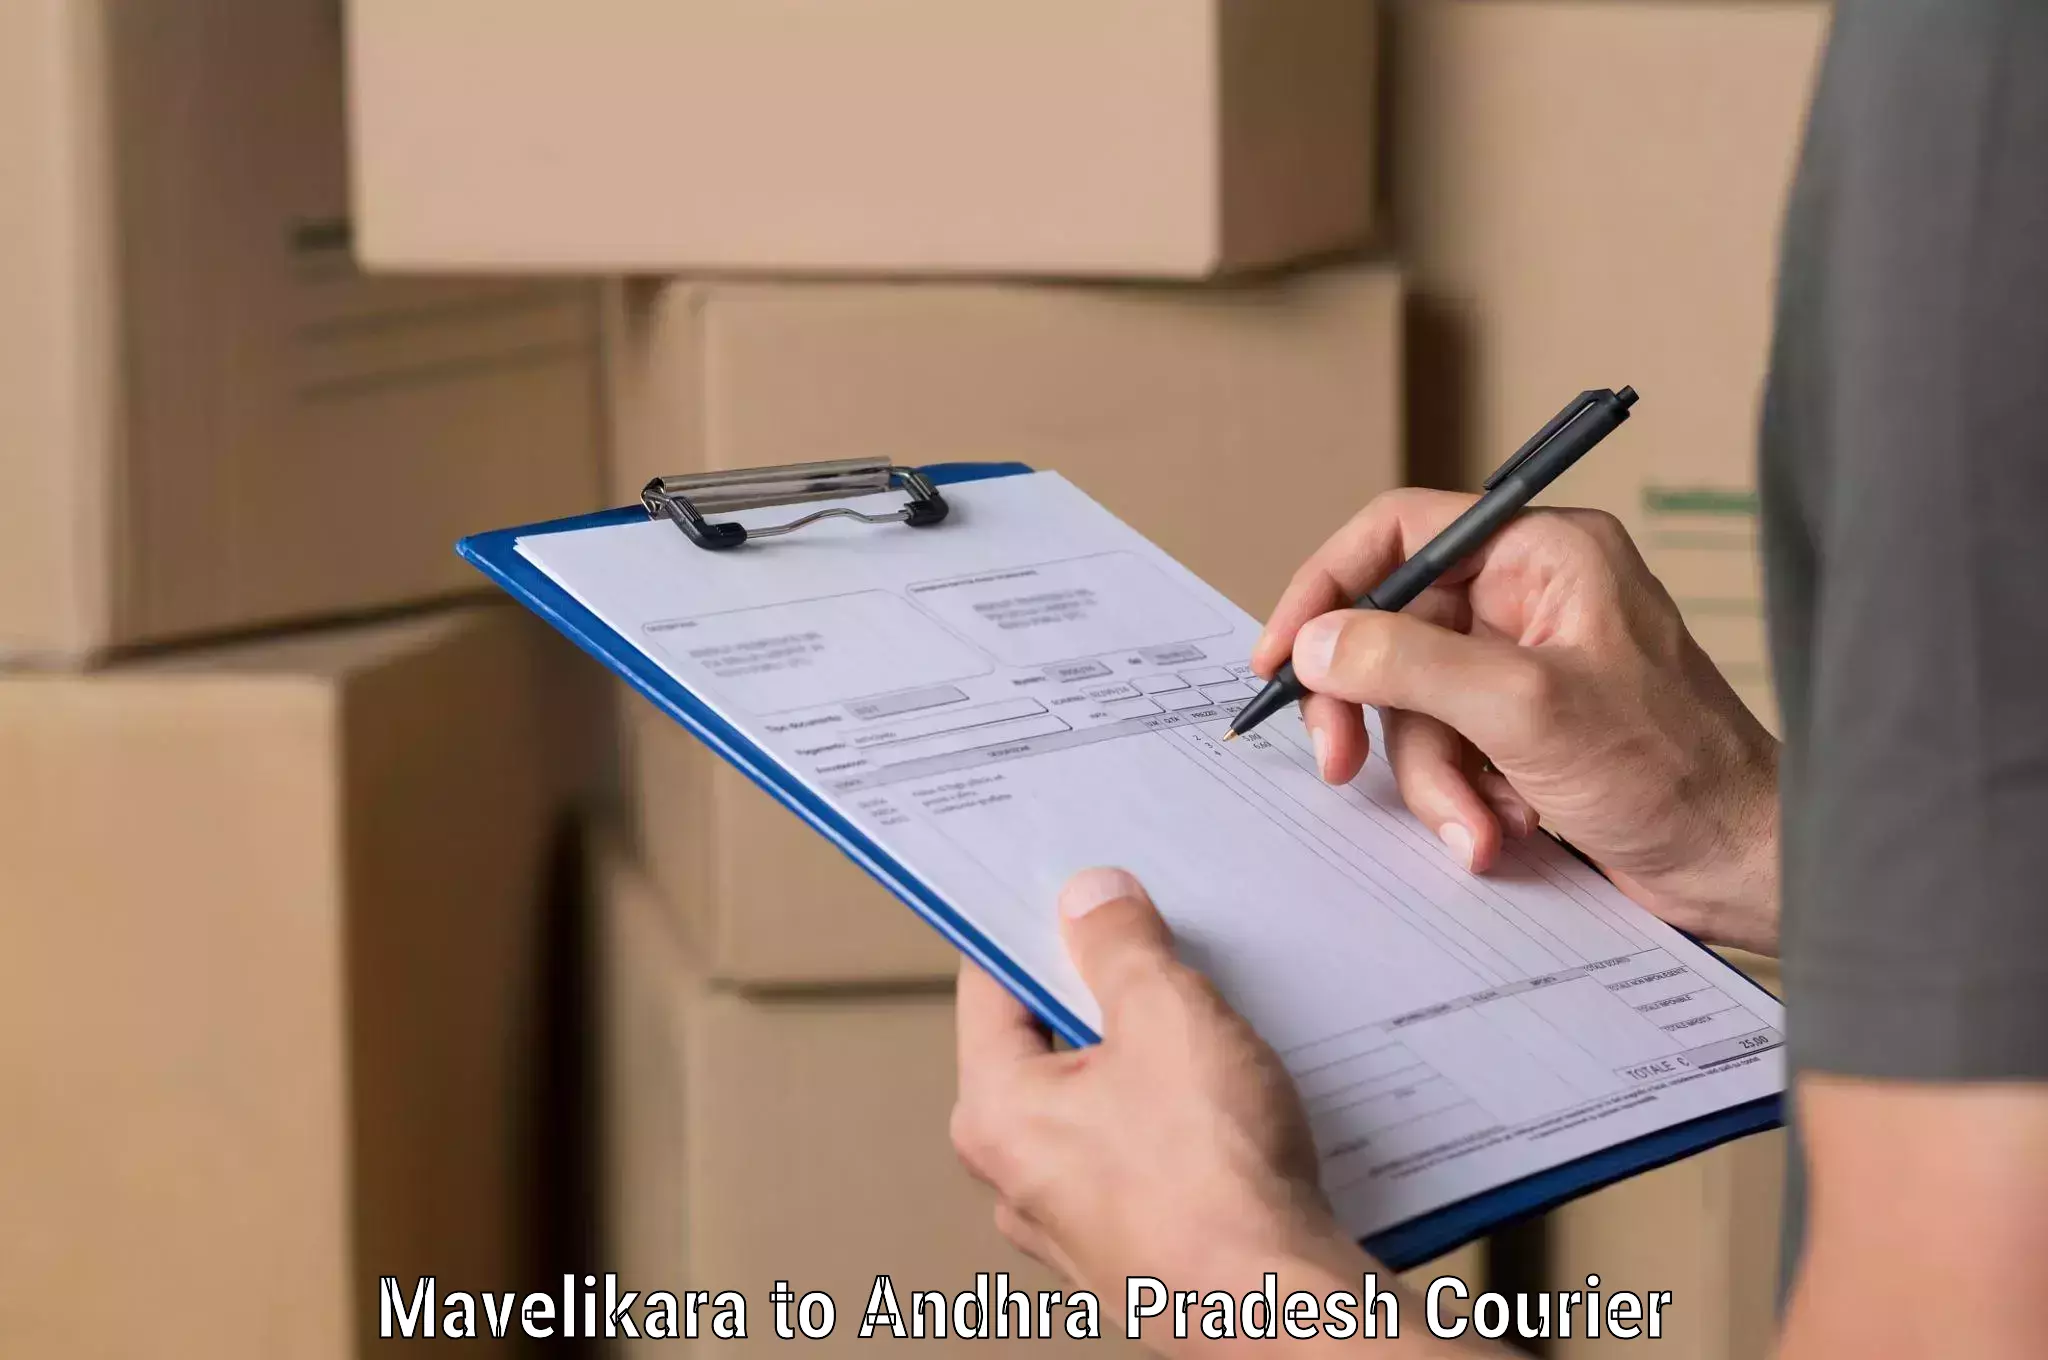 Secure shipping methods Mavelikara to Pamuru